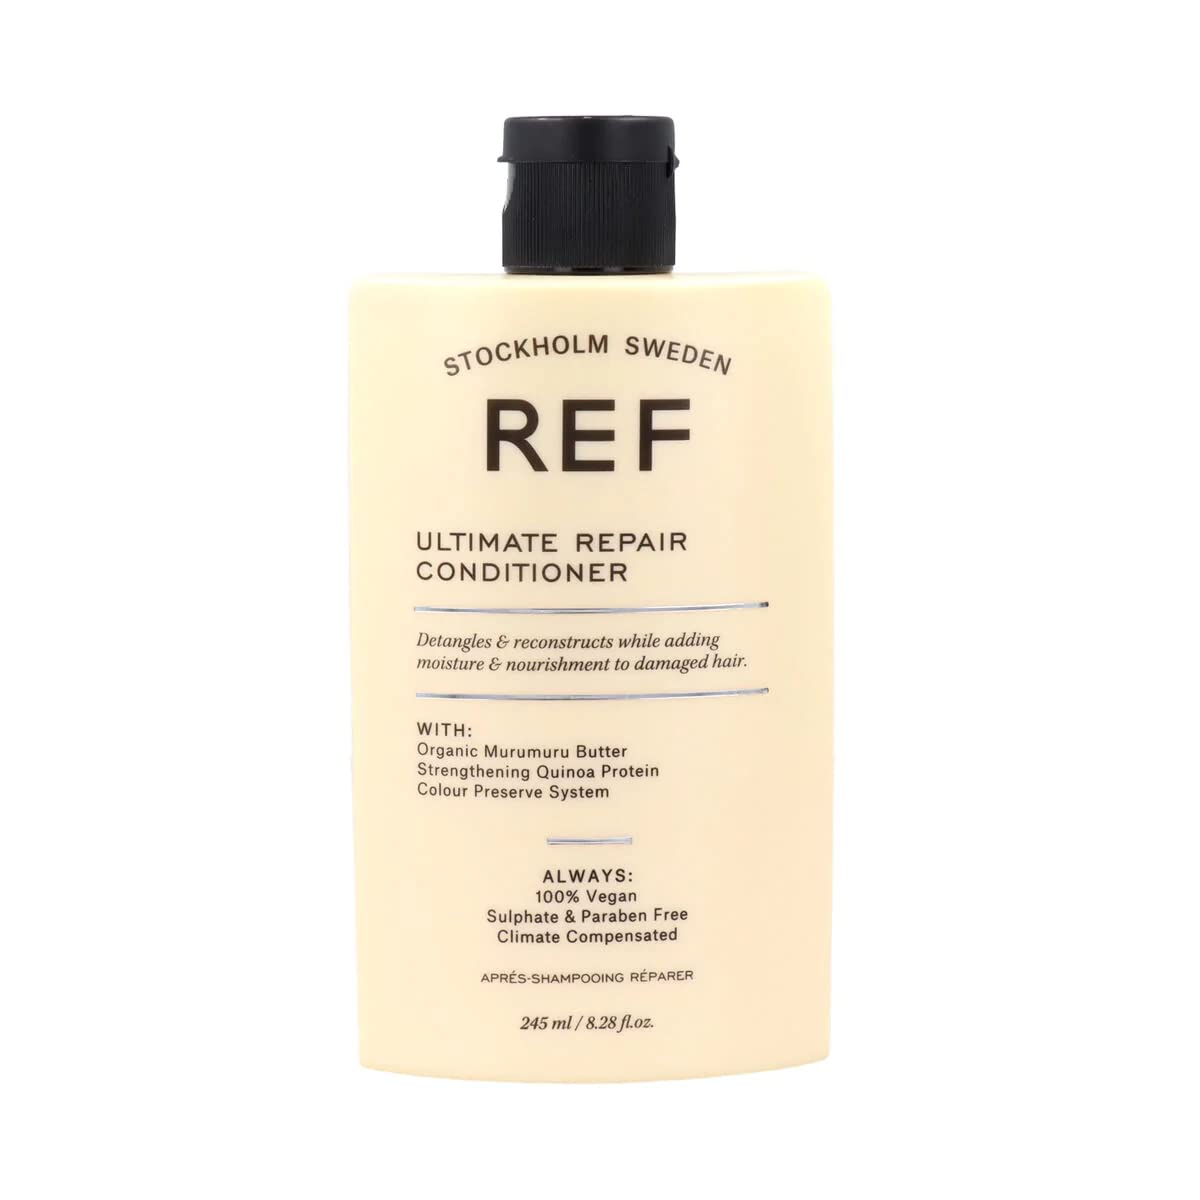 REF Ultimate Repair Conditioner -Size 8.28 oz